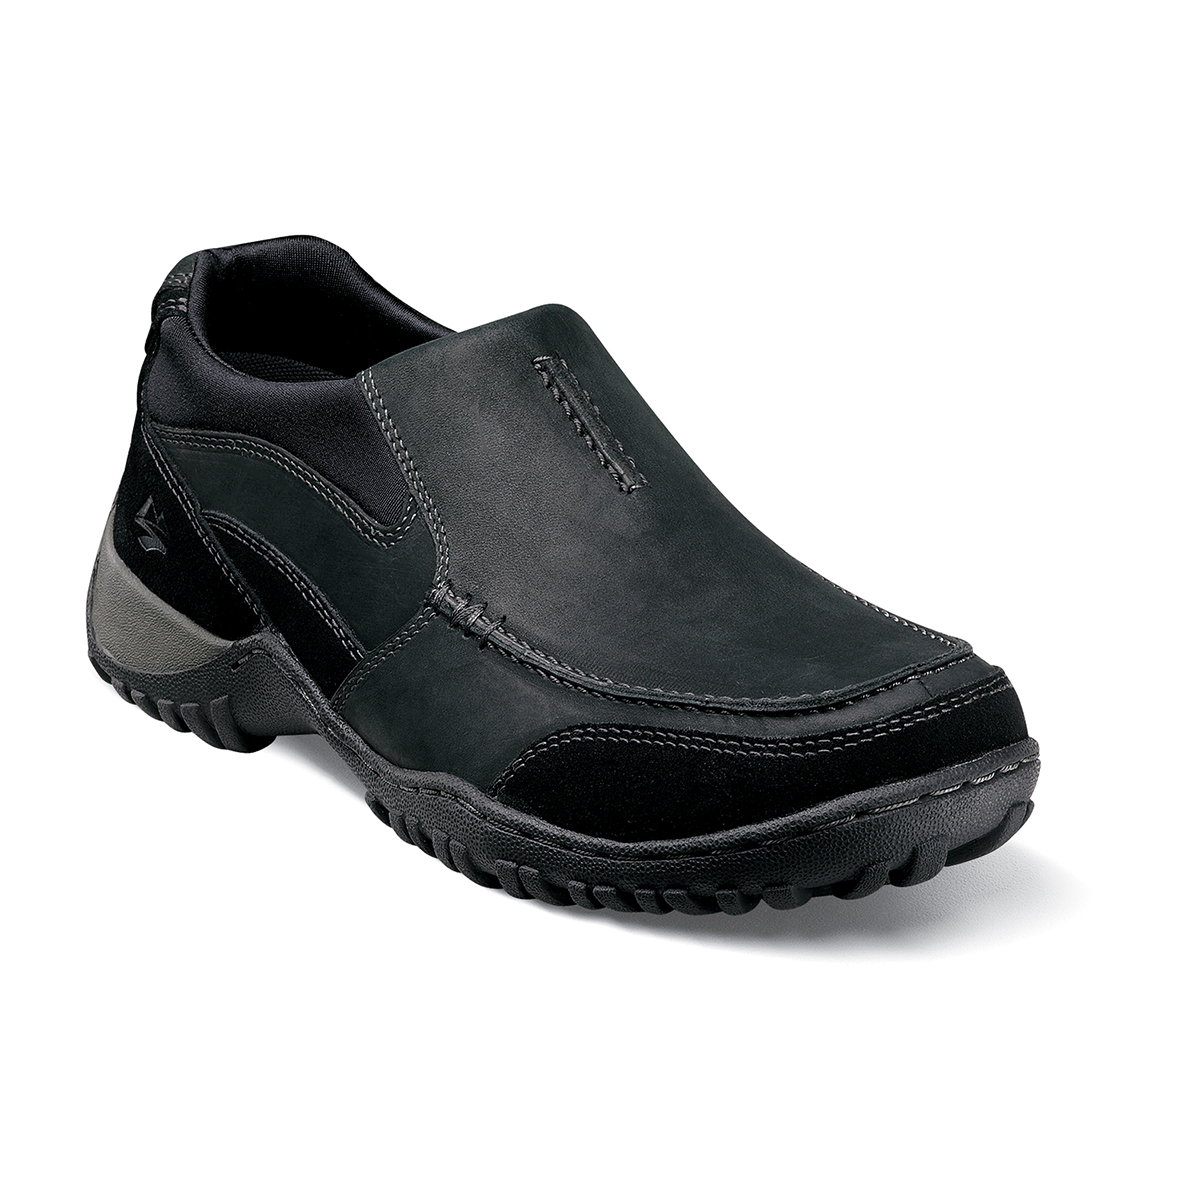 Men's Casual Shoes | Black Moc Toe Slip On | Nunn Bush Portage